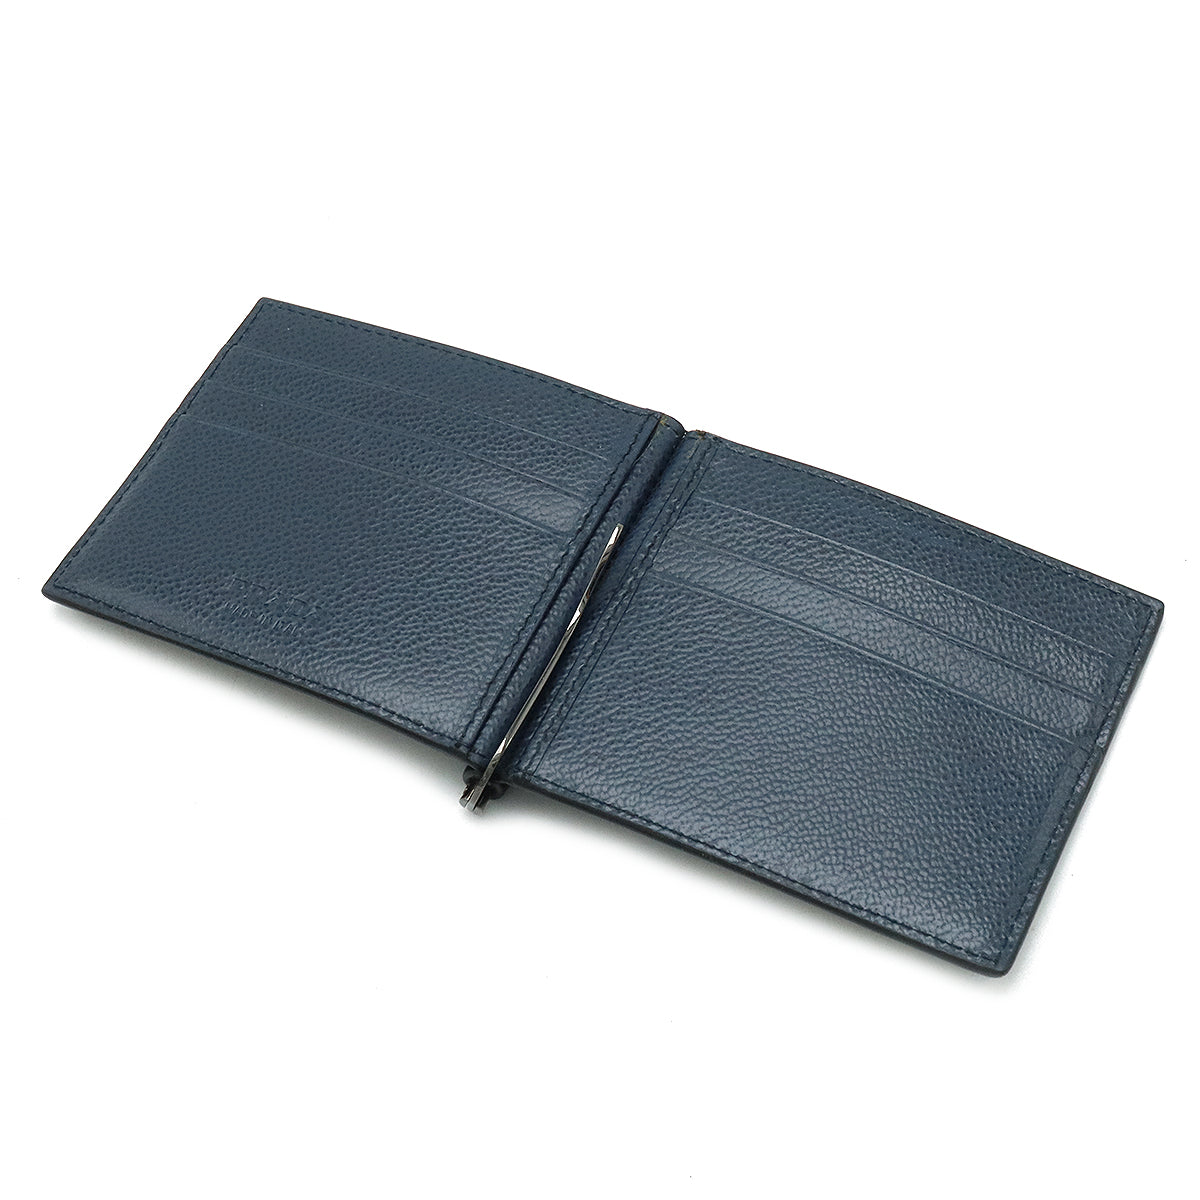 PRADA Prada 2 Folded Wallet 2 Folded Wallet Money Clip Leather NERO Black Black Navi  2MN077